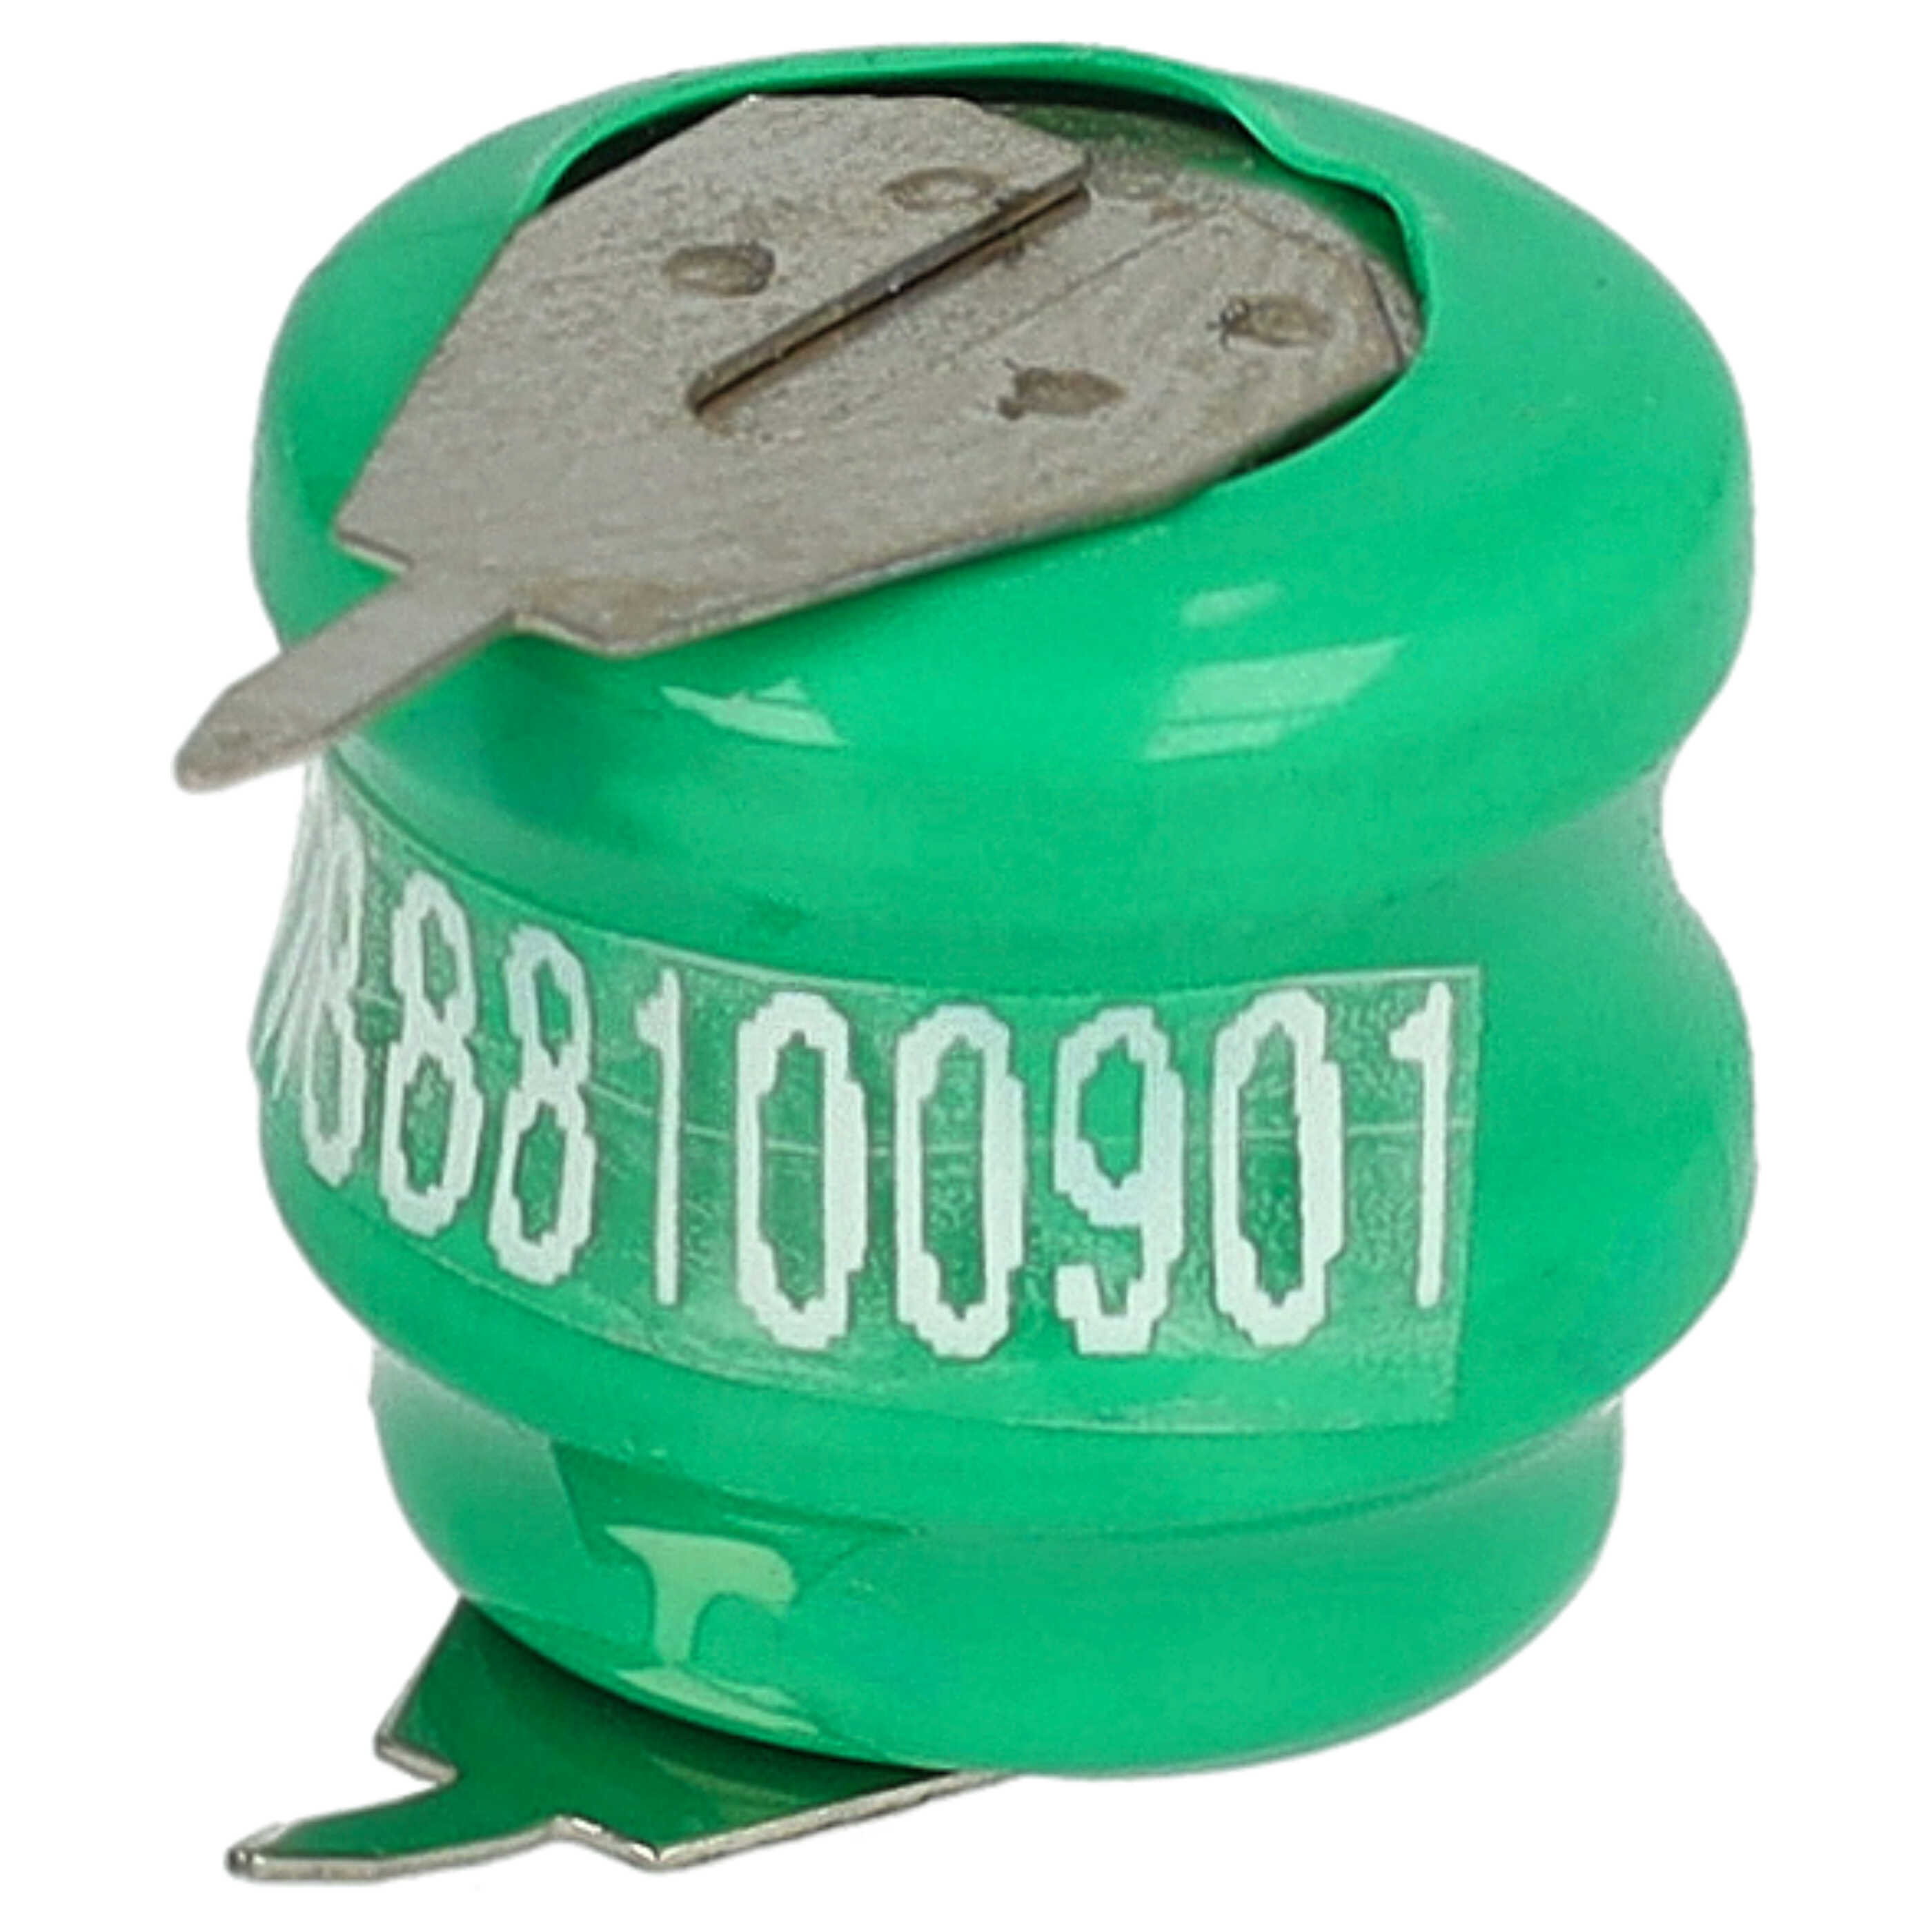 Batteria a bottone (2x cella) tipo V40H 2 pin sostituisce V40H per modellismo, luci solari ecc. 